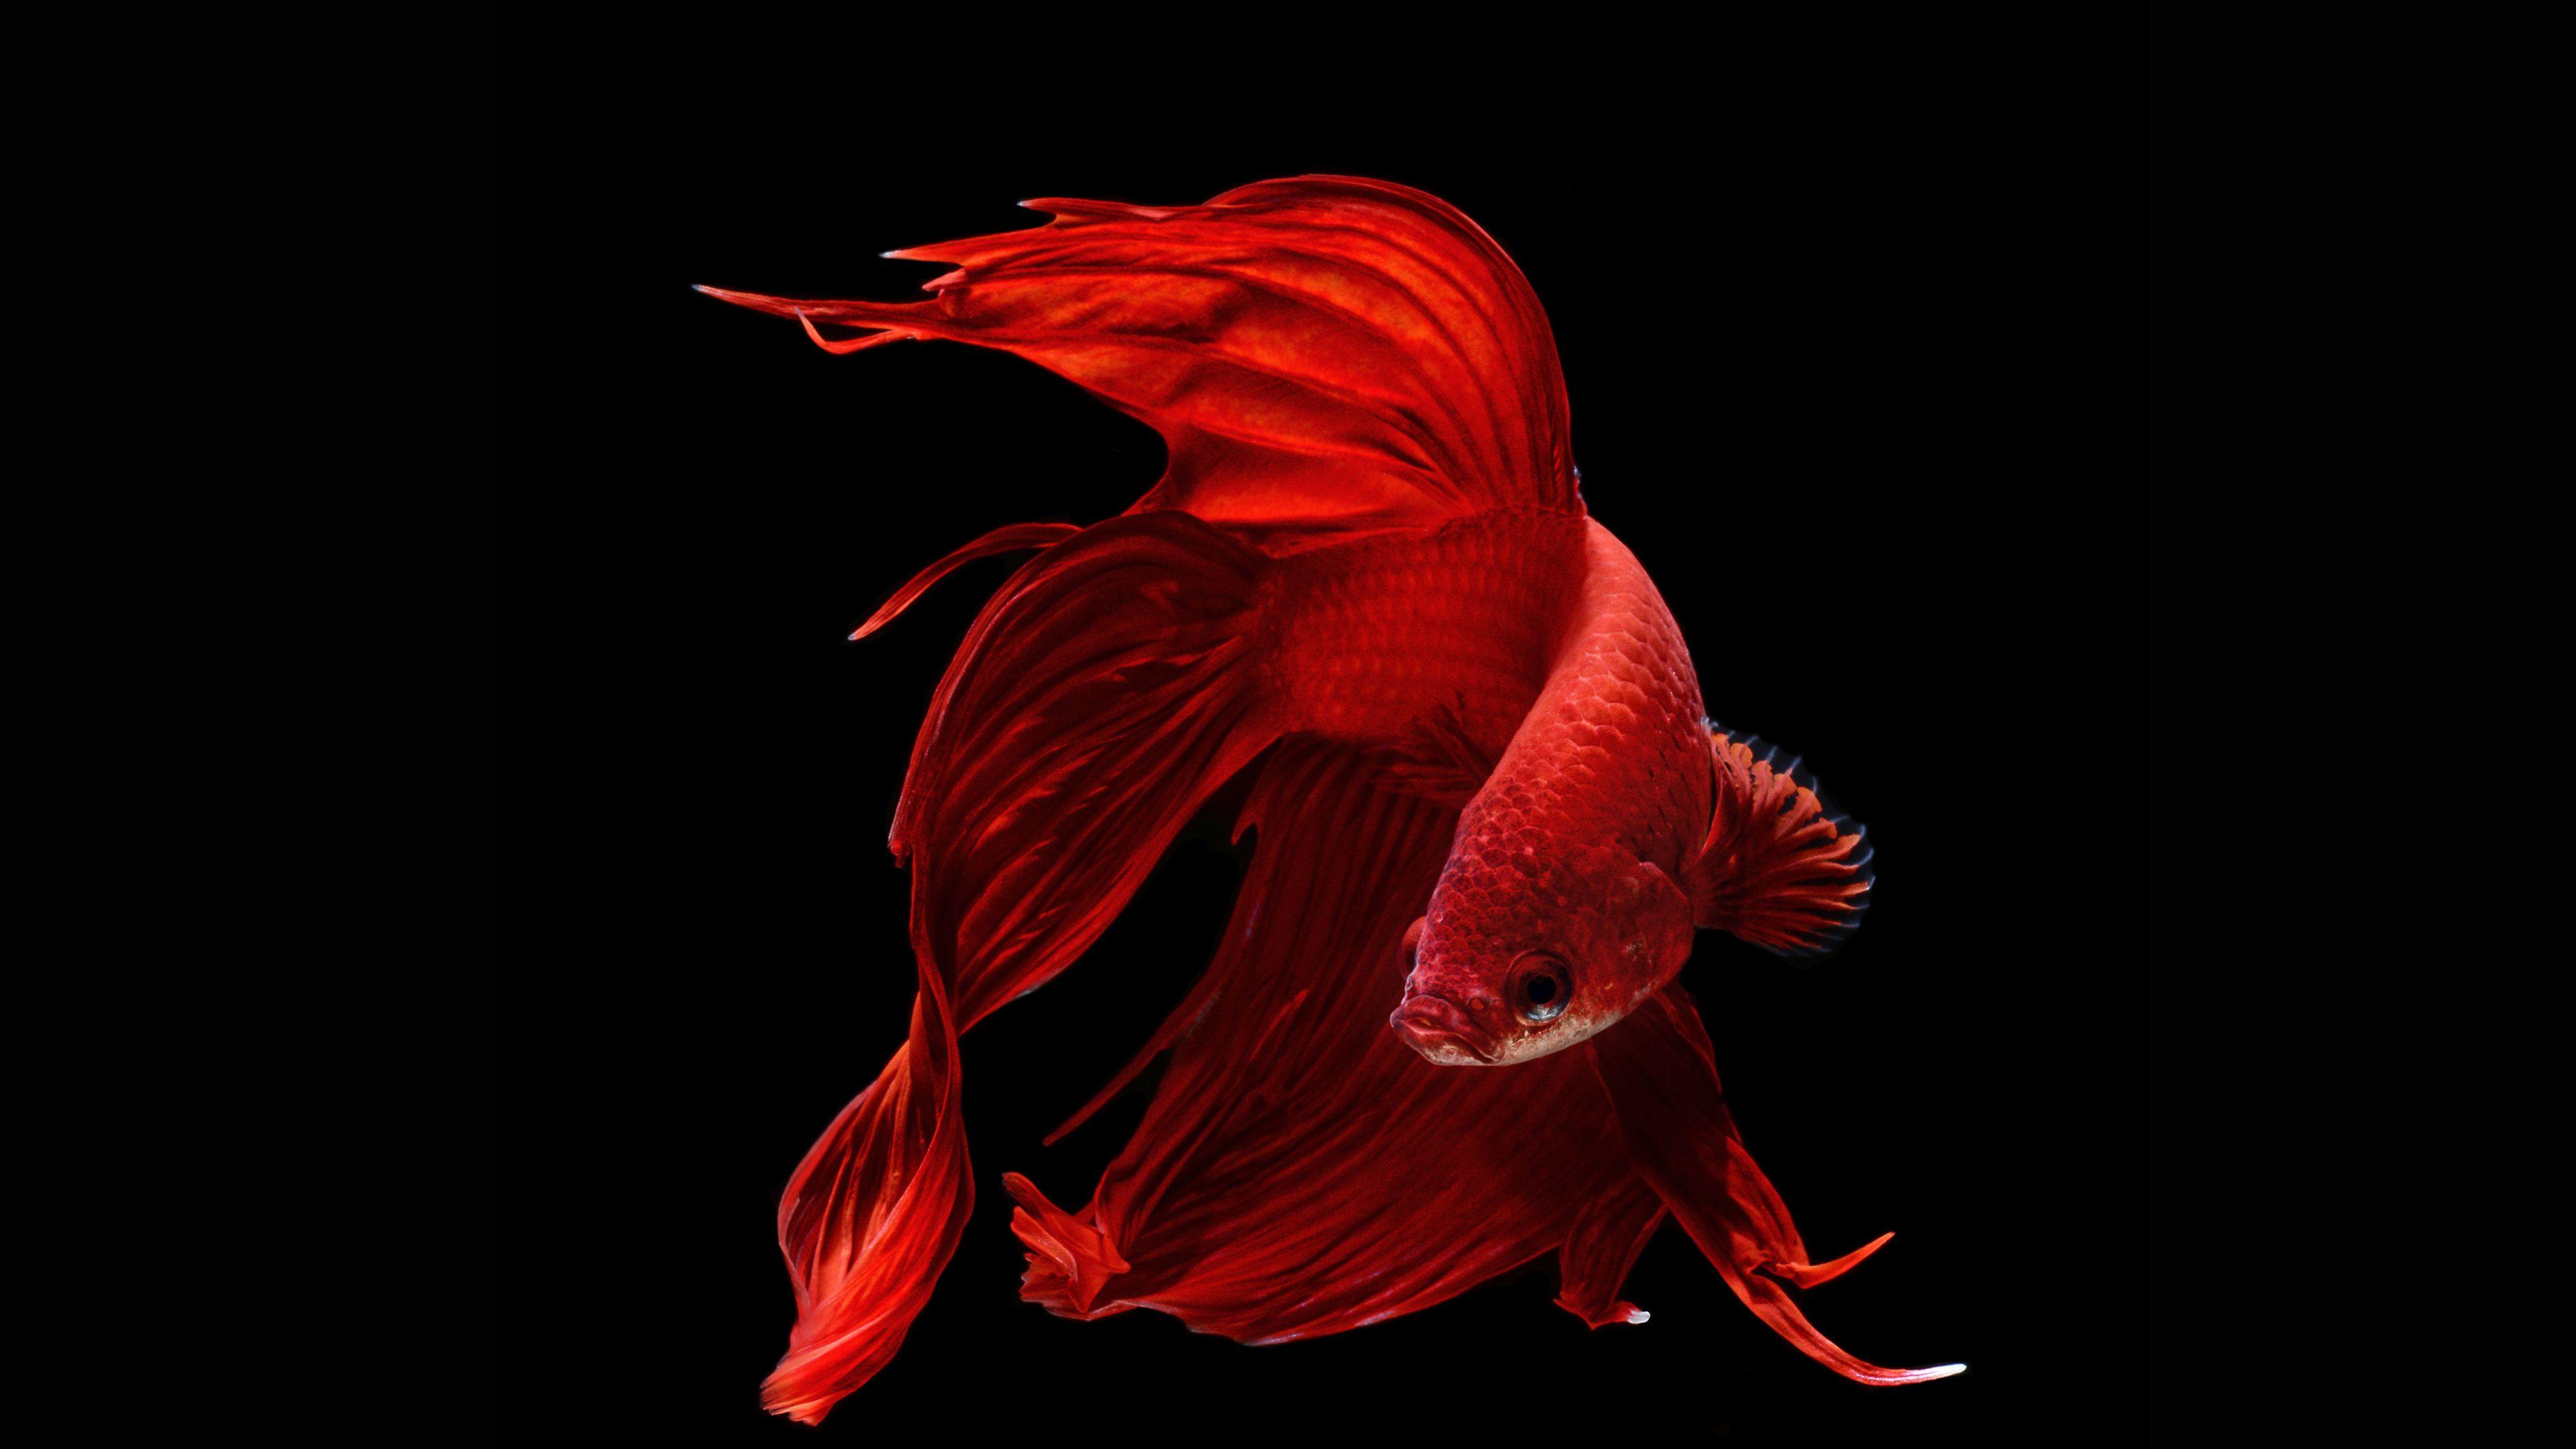 Red Fish Images  Free Download on Freepik